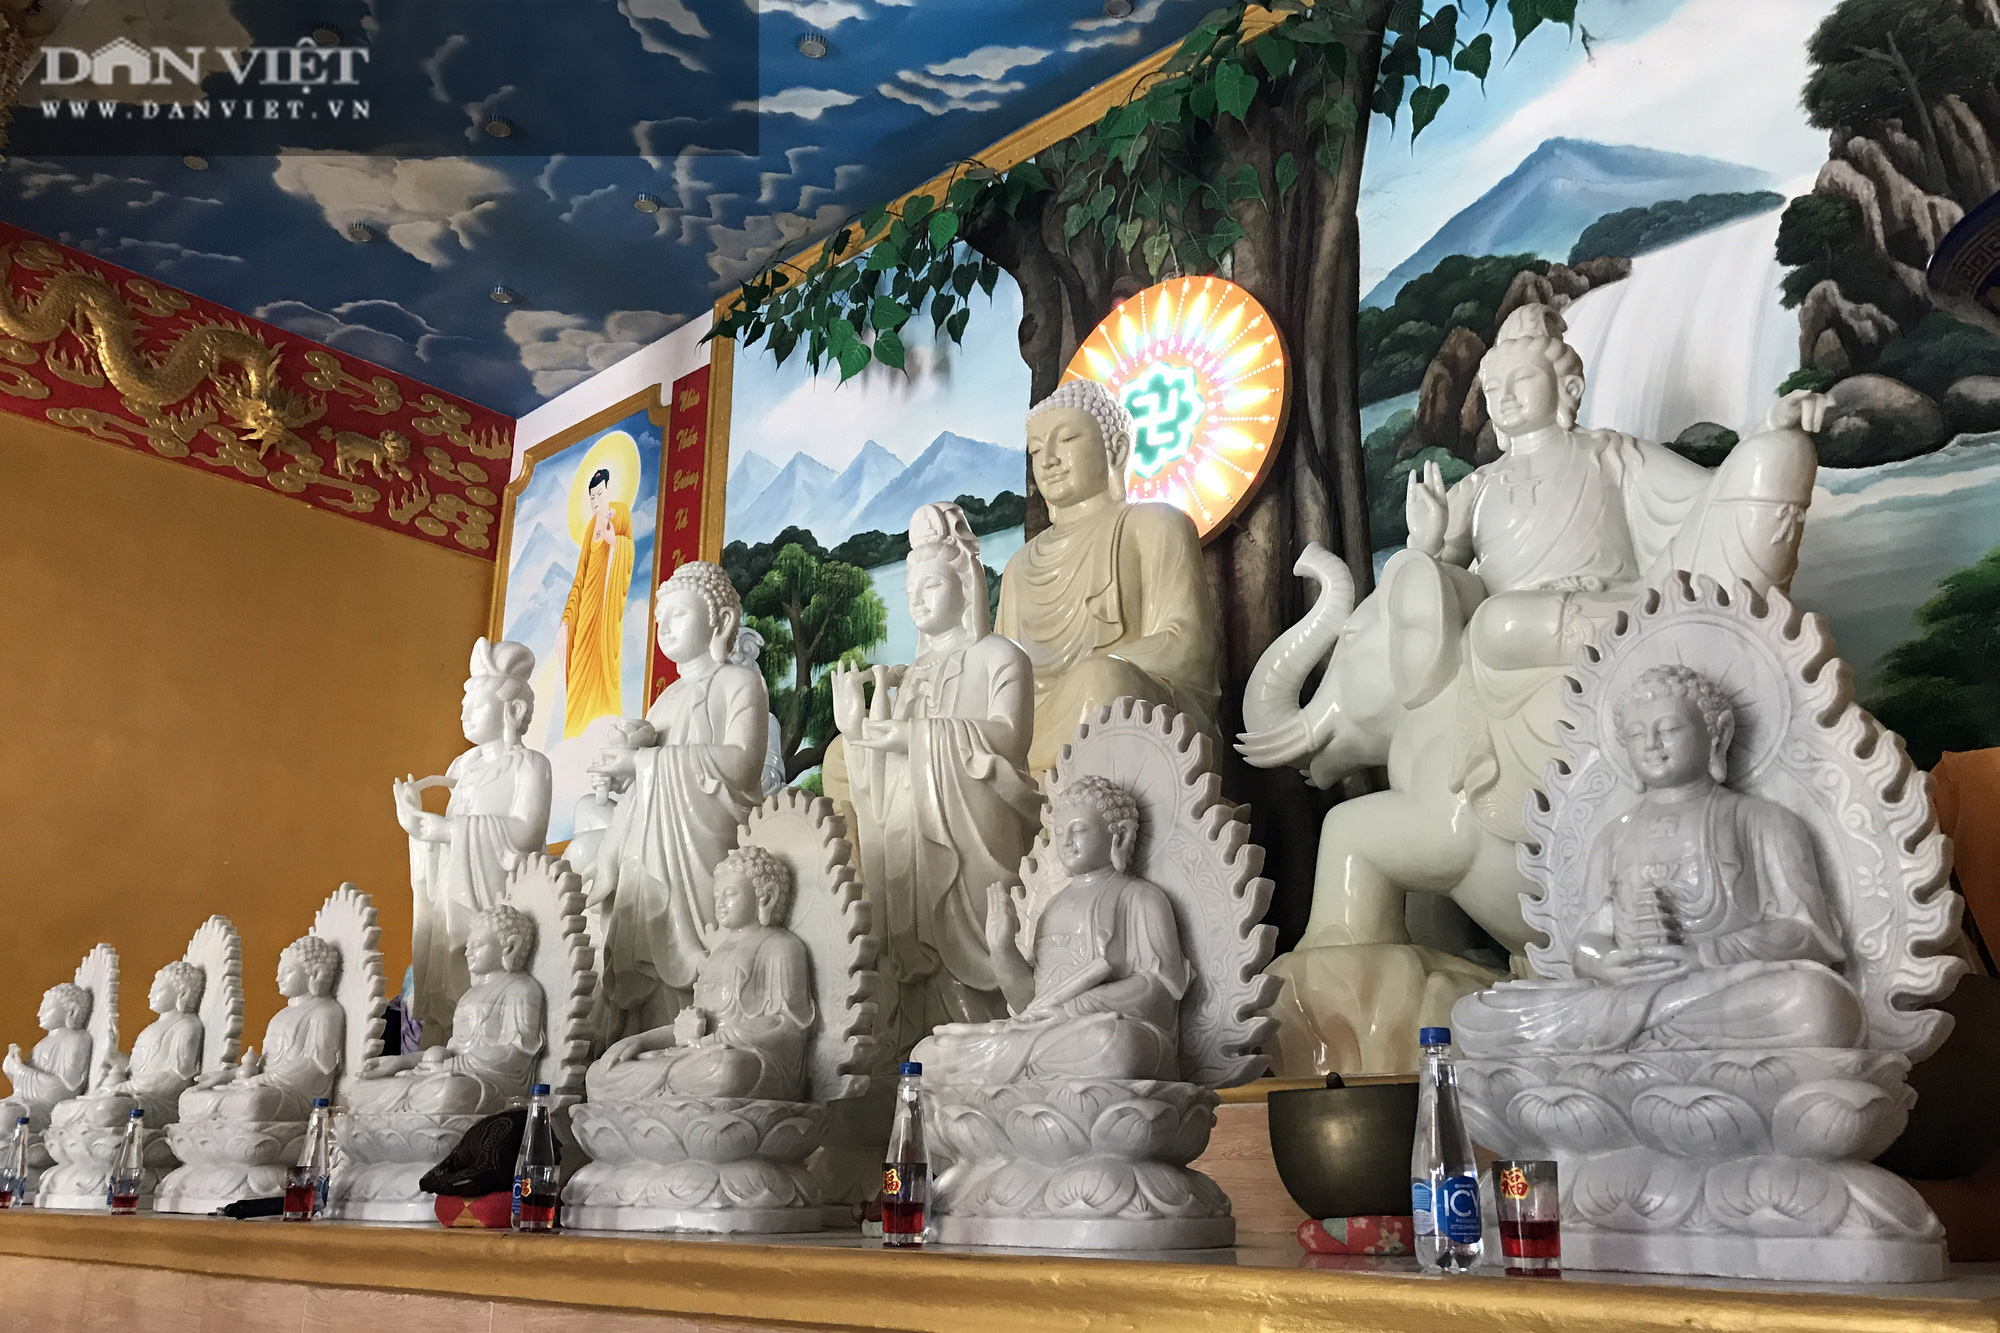 Ngôi chùa “độc” nhất miền Tây: Có nhiều tượng Phật bằng đá đổi màu theo thời gian - Ảnh 6.